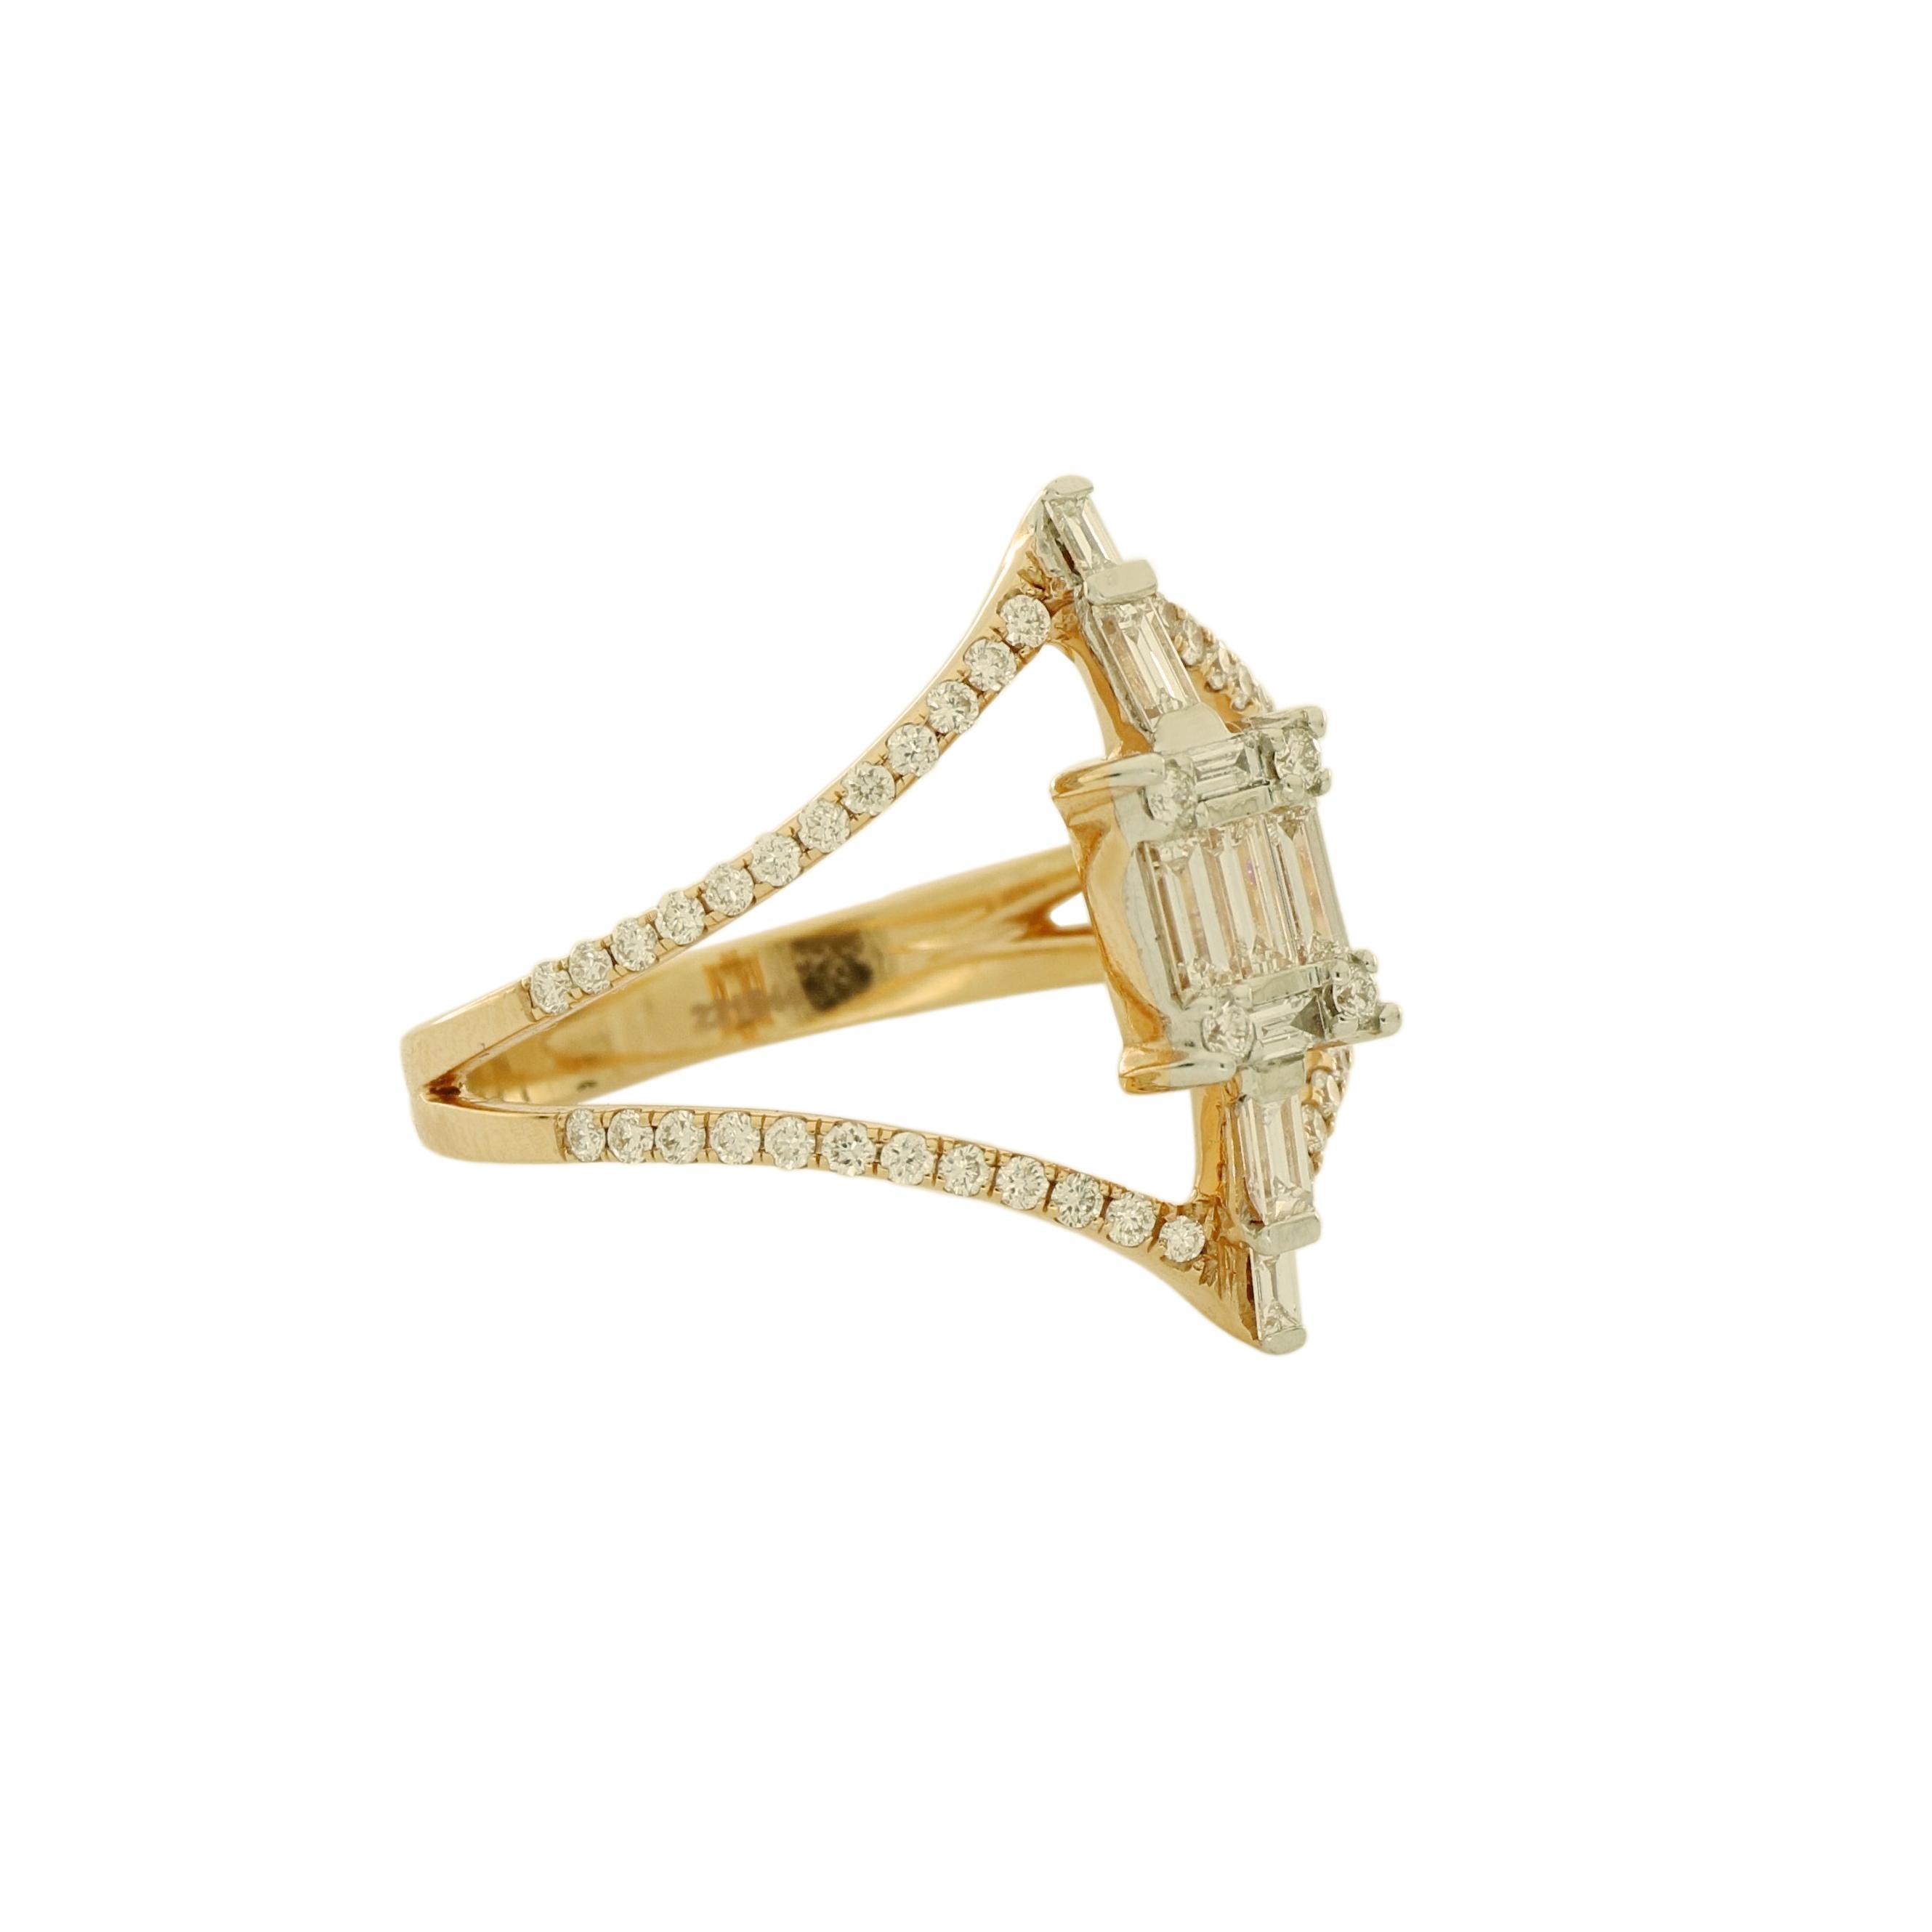 Der Ring aus 18 Karat Roségold besteht aus 2 Lagen rundgeschliffener Diamanten, die von einem Baguetteschliff in der Mitte umrahmt werden. Der Ring ist so fein gearbeitet, dass er eine starke Persönlichkeit, einen einzigartigen Geschmack und ein